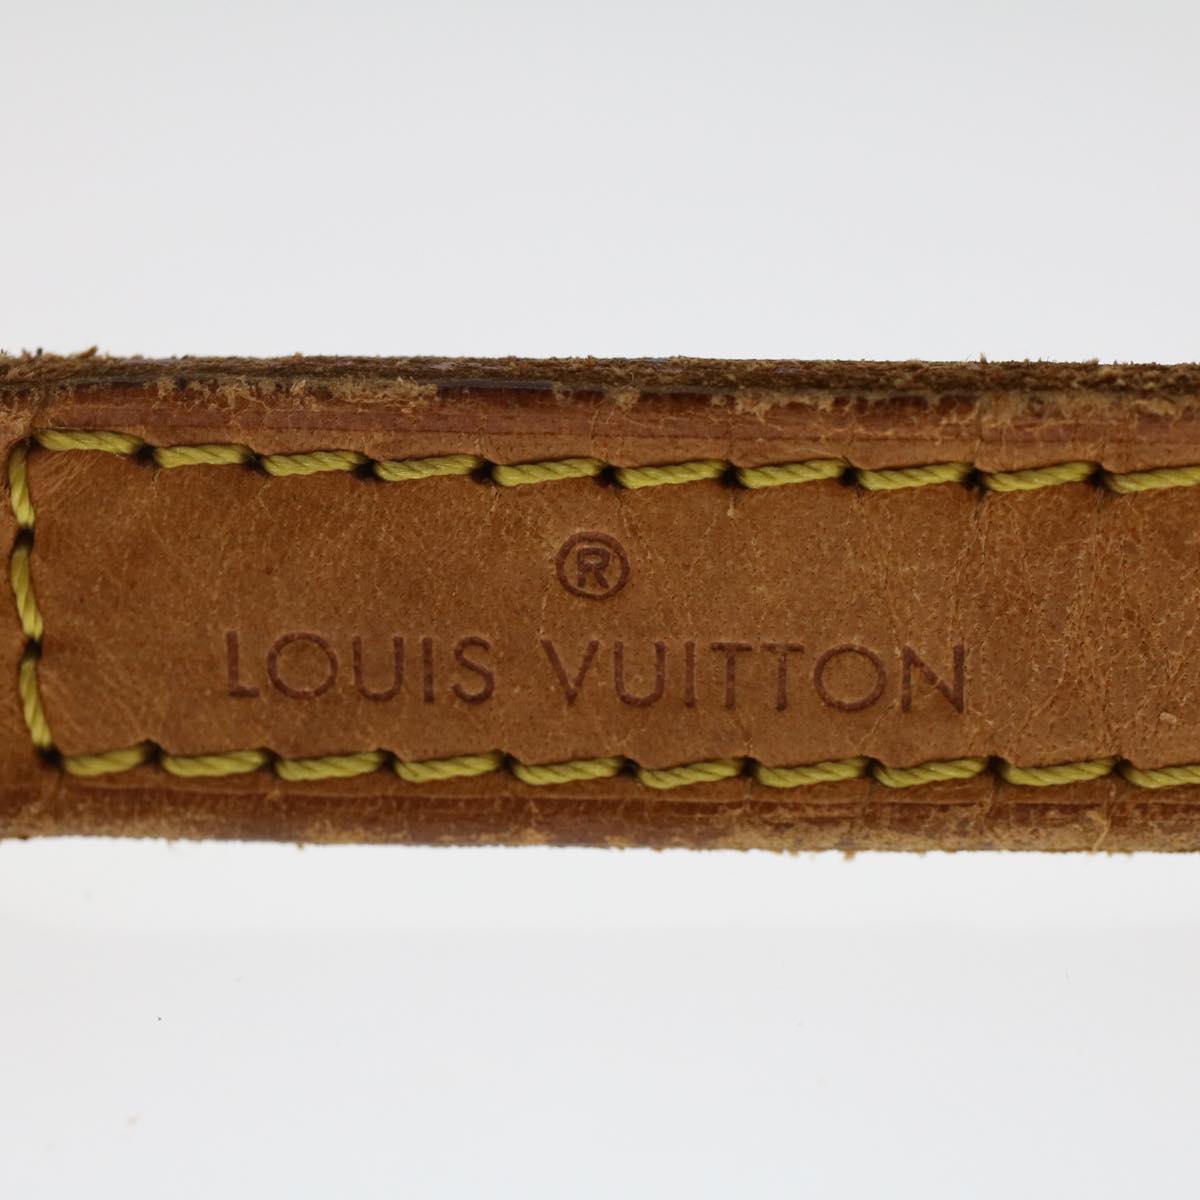 LOUIS VUITTON Shoulder Strap Leather 36.2"" Beige LV Auth 49179